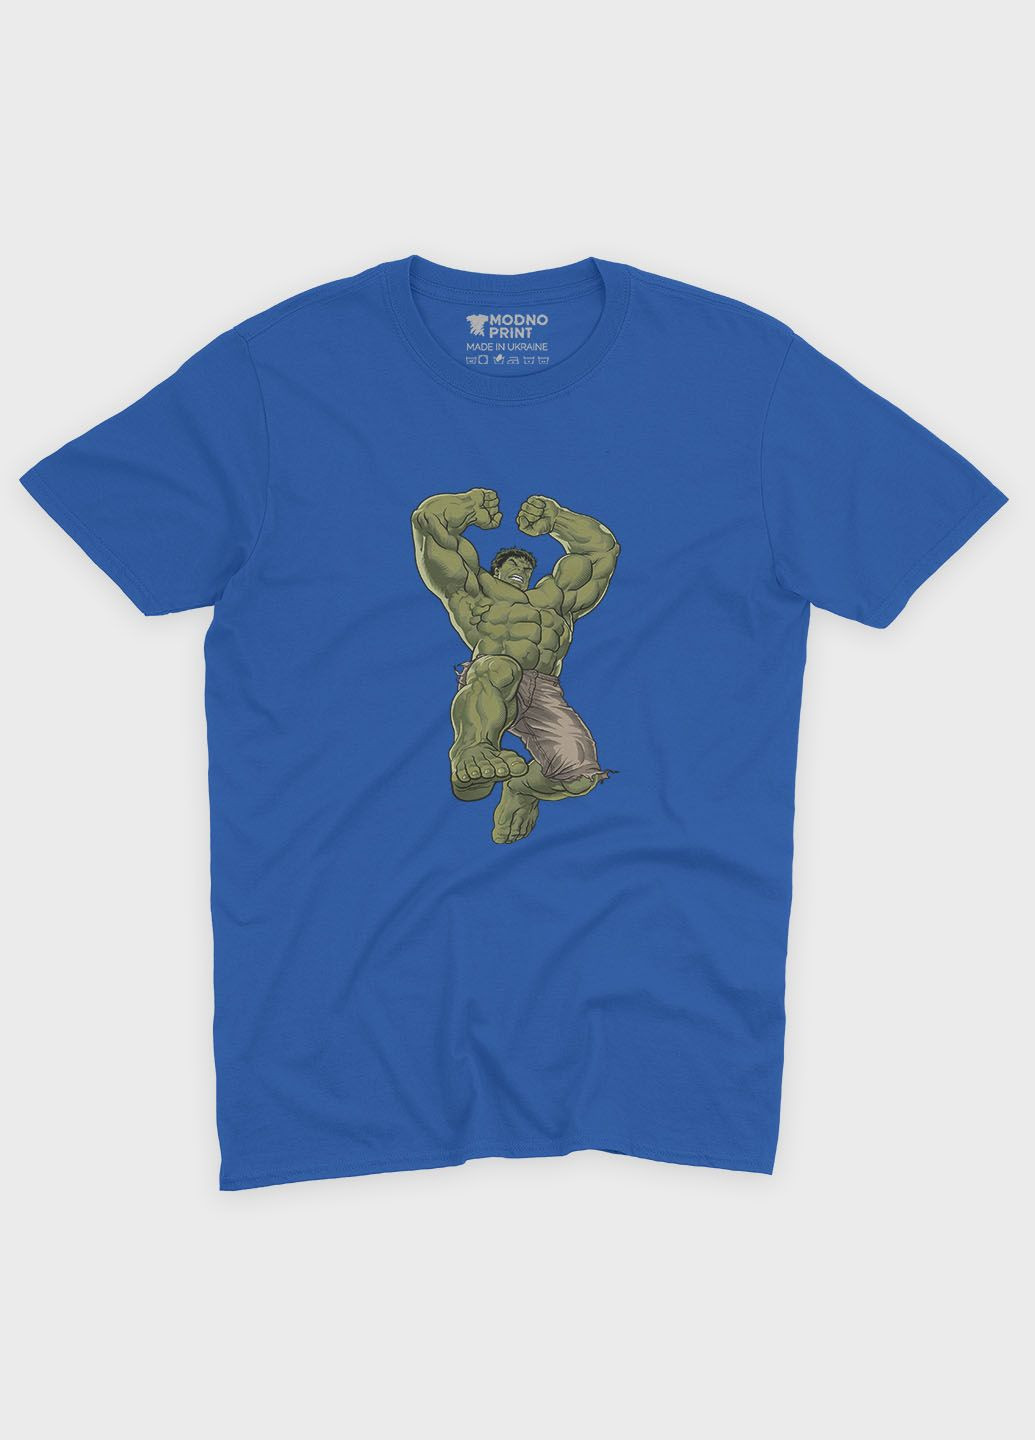 Синяя демисезонная футболка для мальчика с принтом супергероя - халк (ts001-1-brr-006-018-011-b) Modno